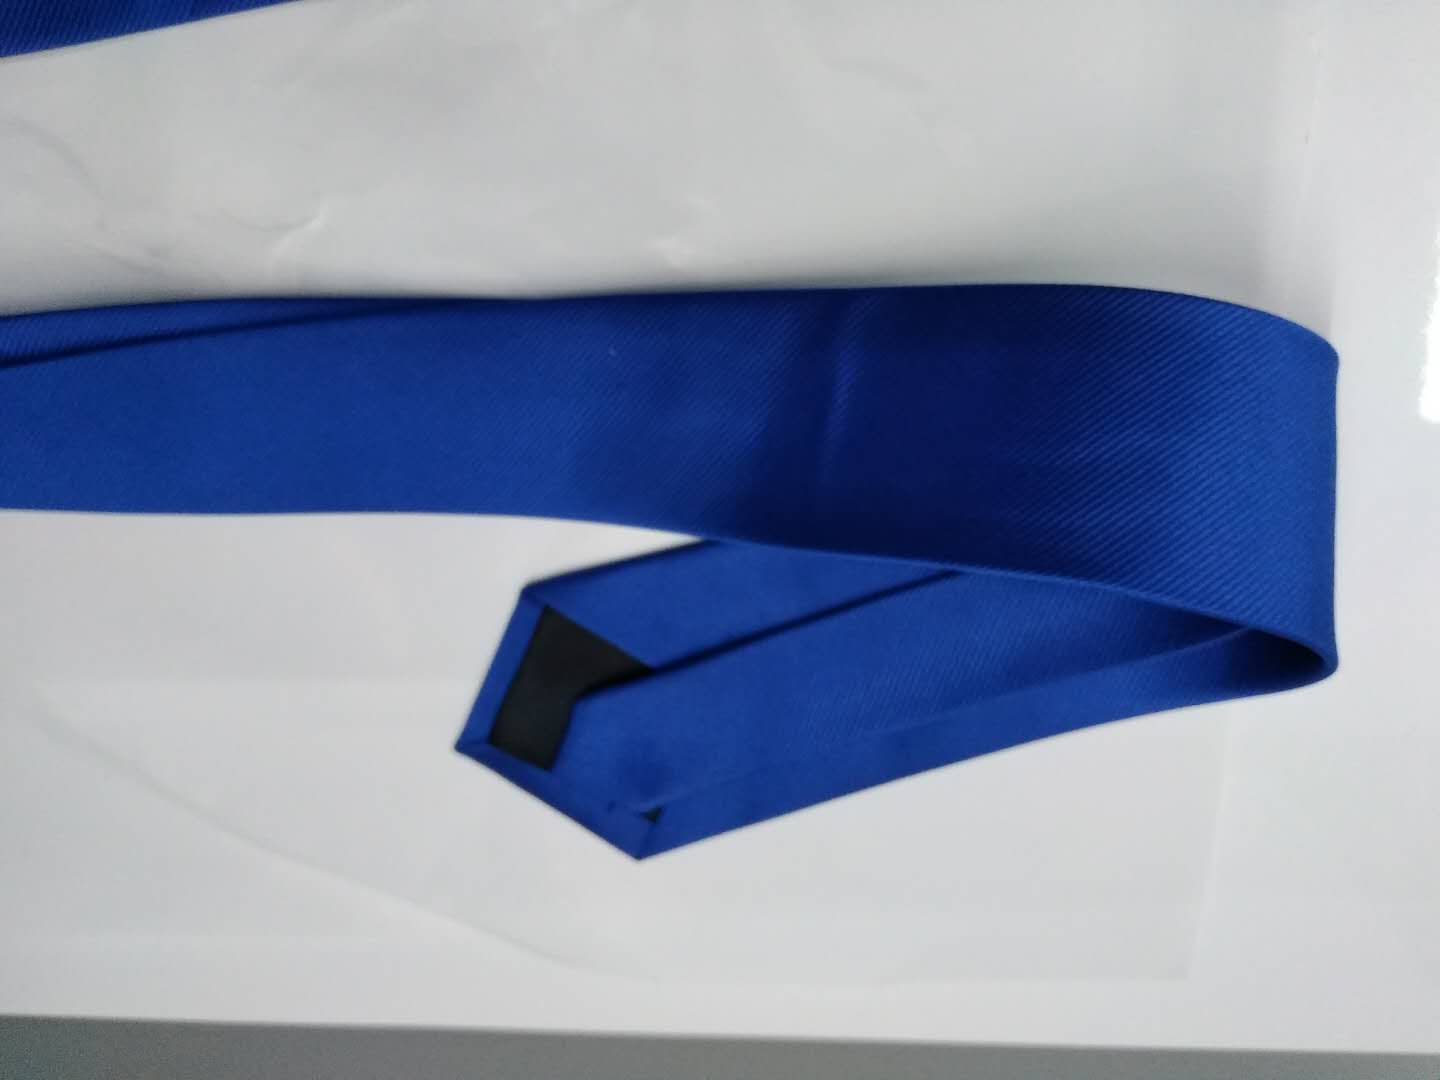 休闲领带定制厂家直销领带厂家商务男士正装领带产品图